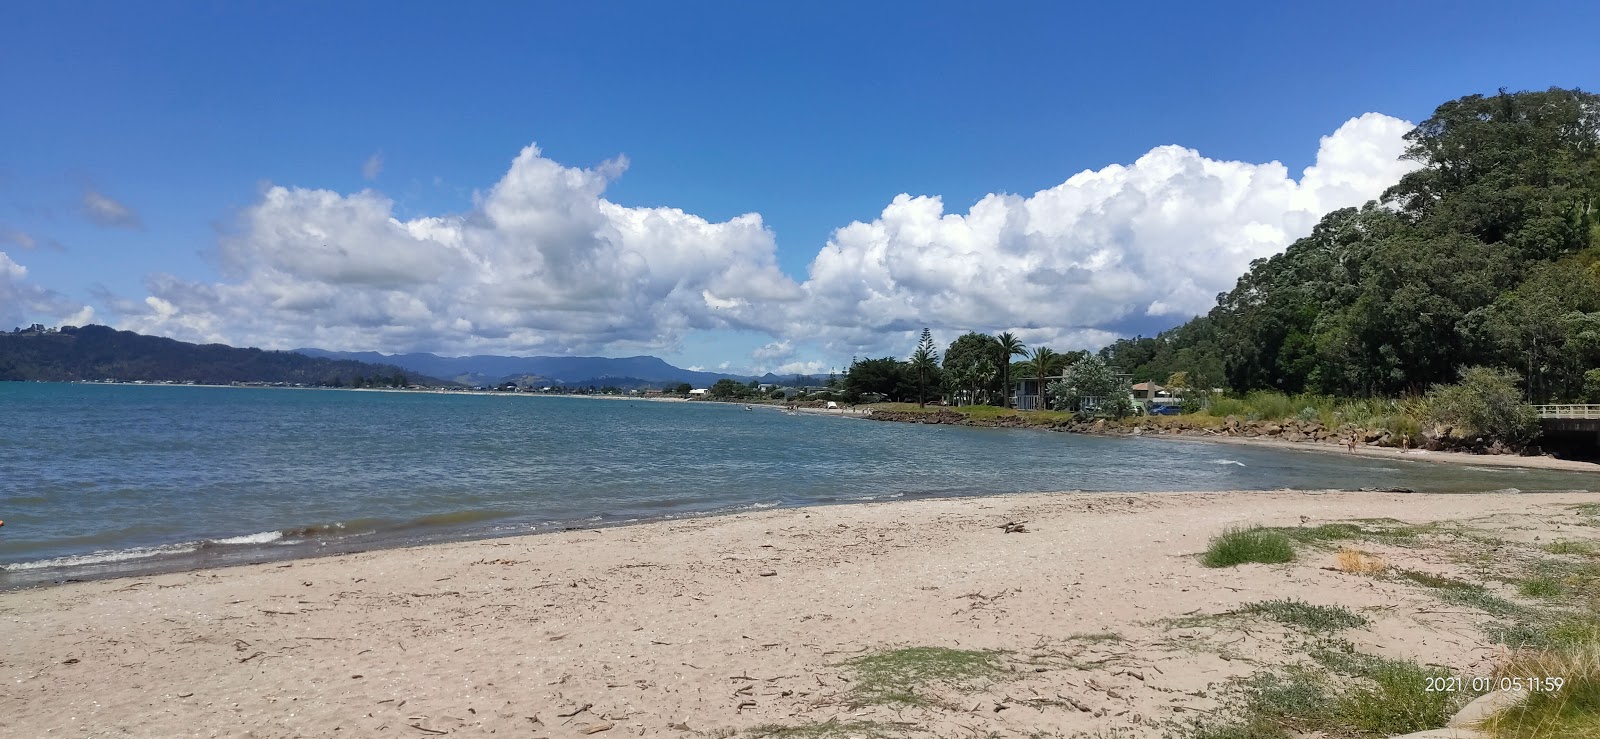 Foto de Ohuka Beach - lugar popular entre los conocedores del relax